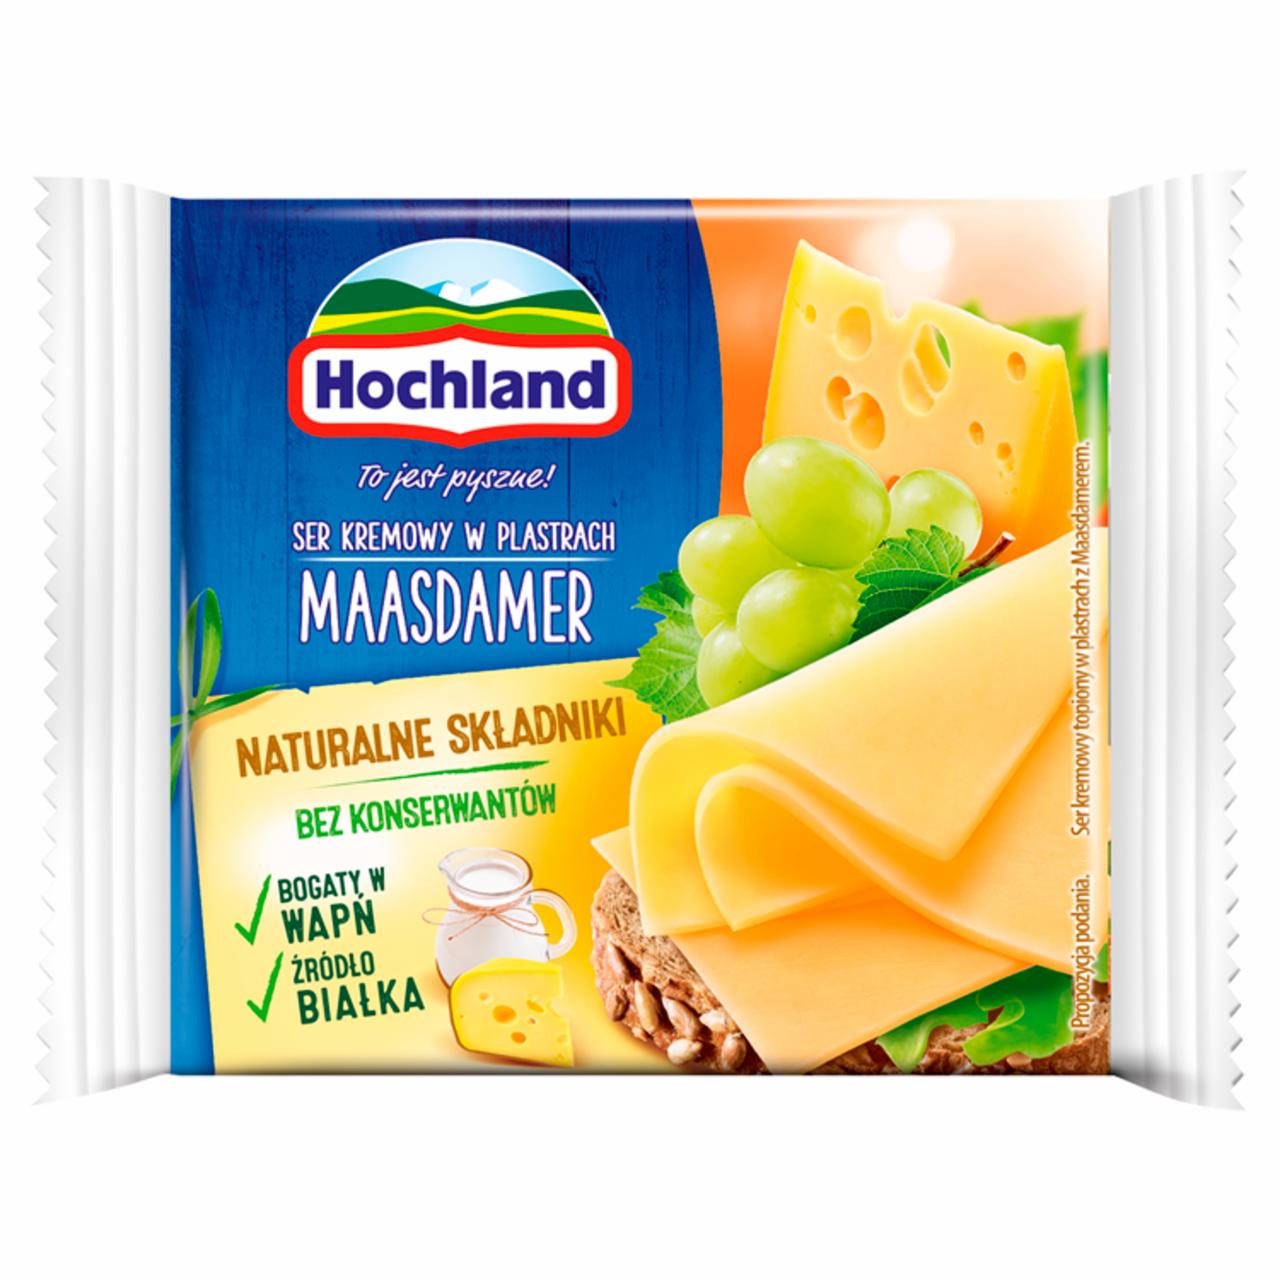 Фото - Сыр плавленый 40% ломтики Maasdamer Hochland